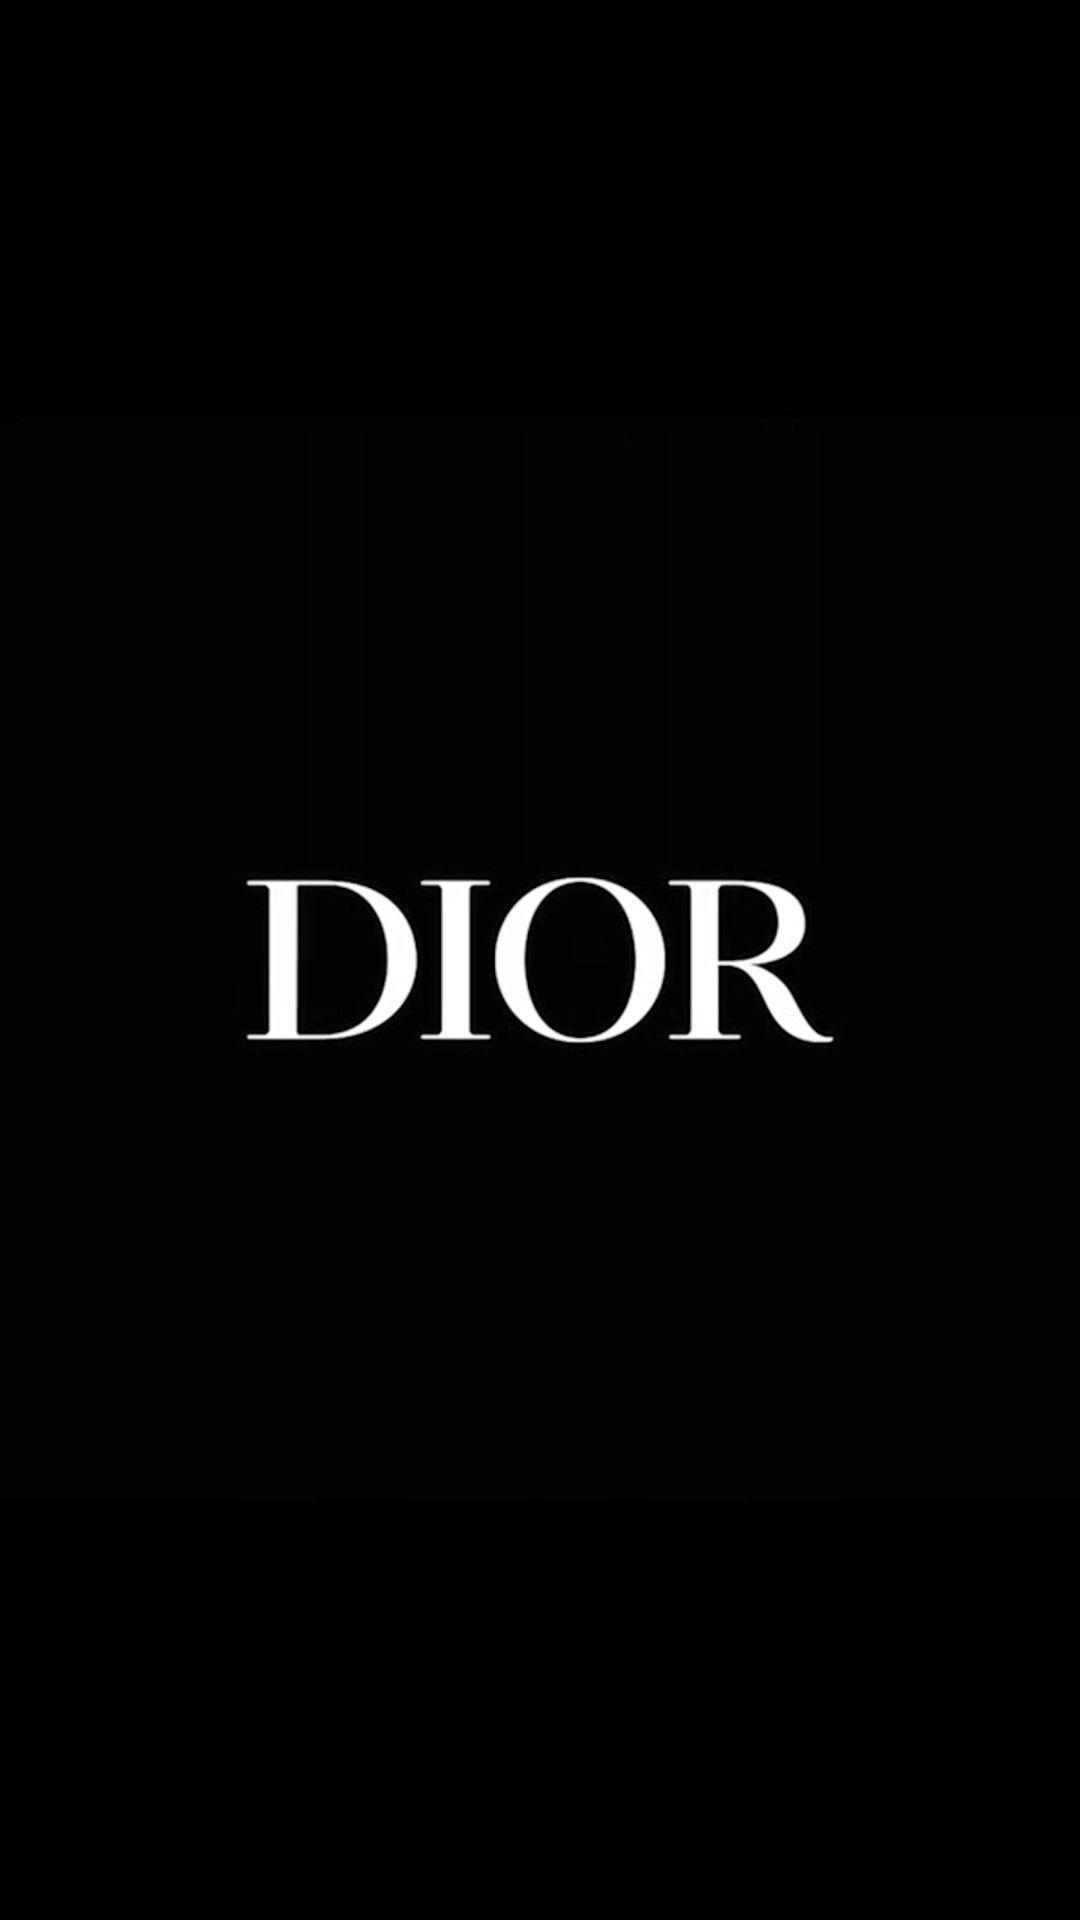 Dior iPhone Wallpaper sẽ đem đến cho bạn trải nghiệm trang trí điện thoại đẳng cấp với những bộ sưu tập thiết kế đầy ấn tượng, tinh tế và thời thượng. Hãy cập nhật ngay để thể hiện phong cách riêng của mình.